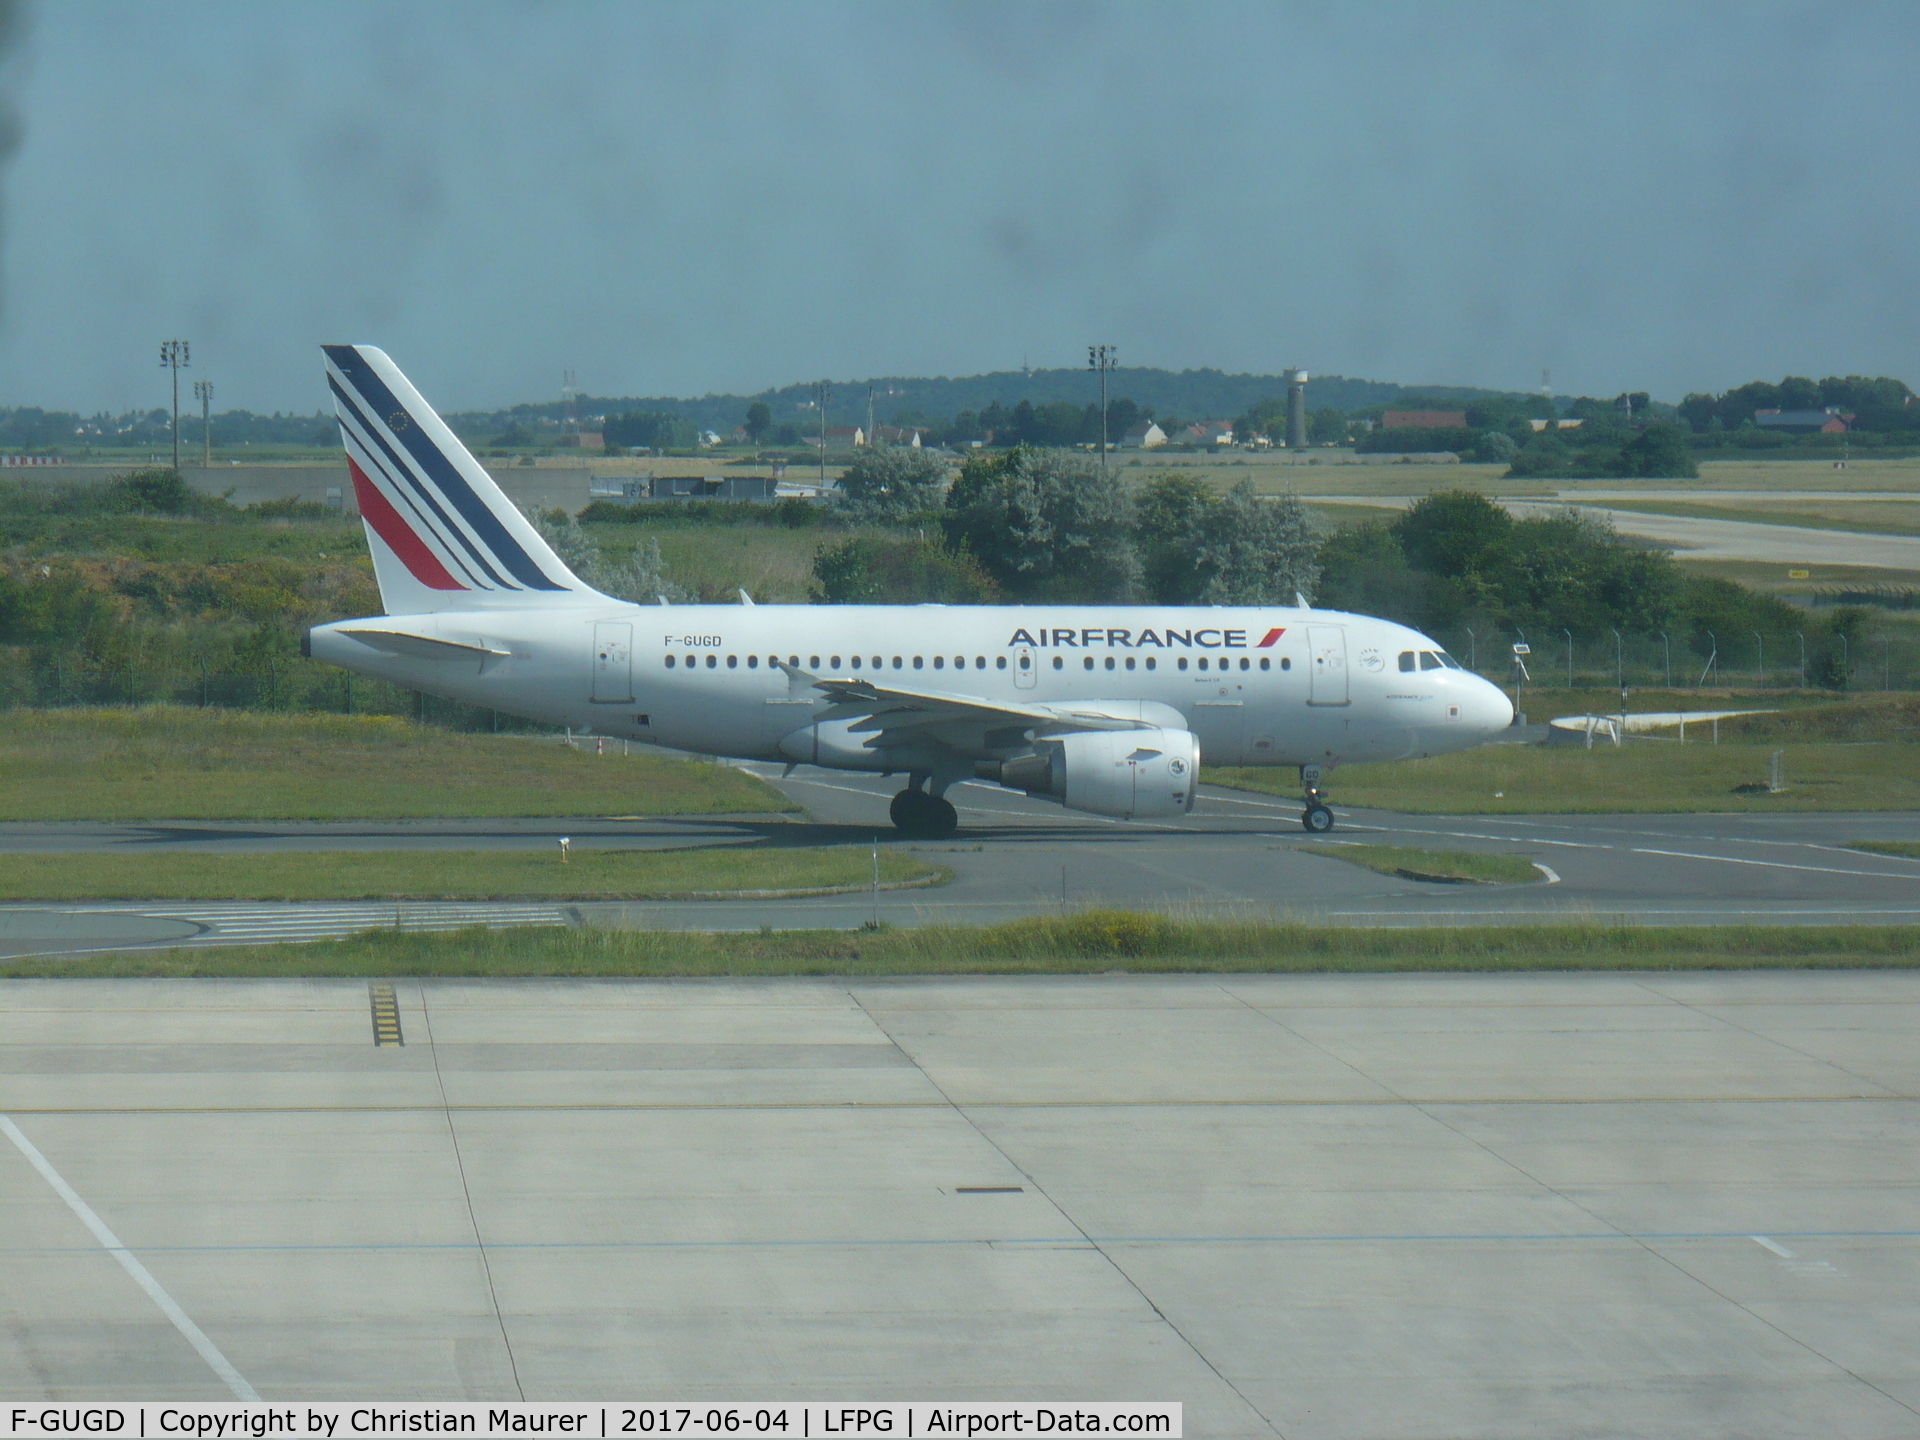 F-GUGD, 2003 Airbus A318-111 C/N 2081, Air France A318